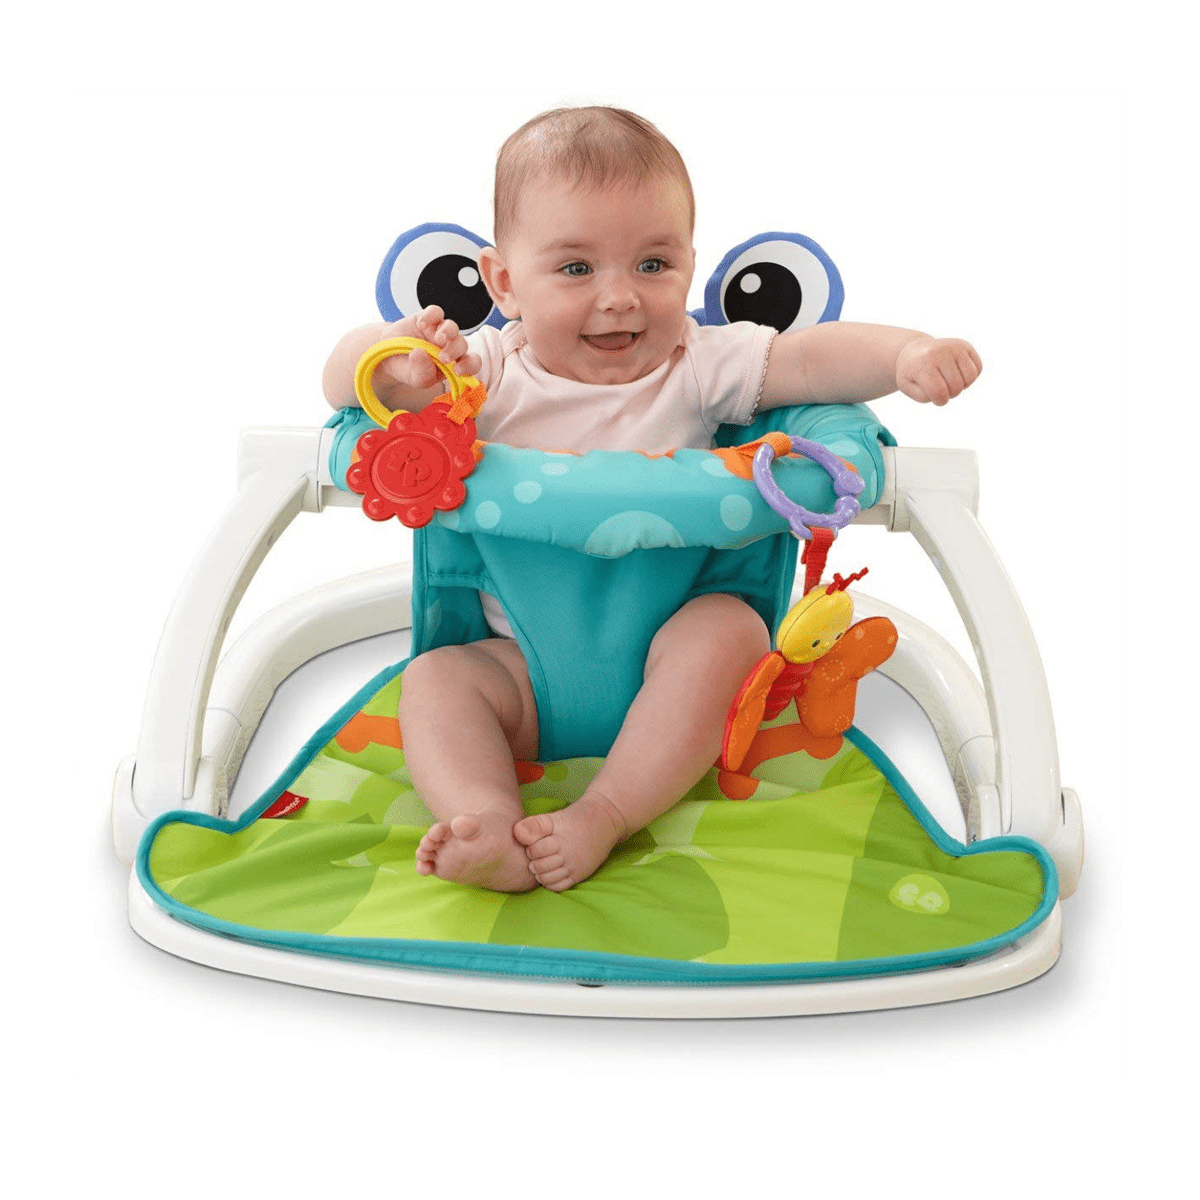 Baby Upright Floor Seat - SquareDubai